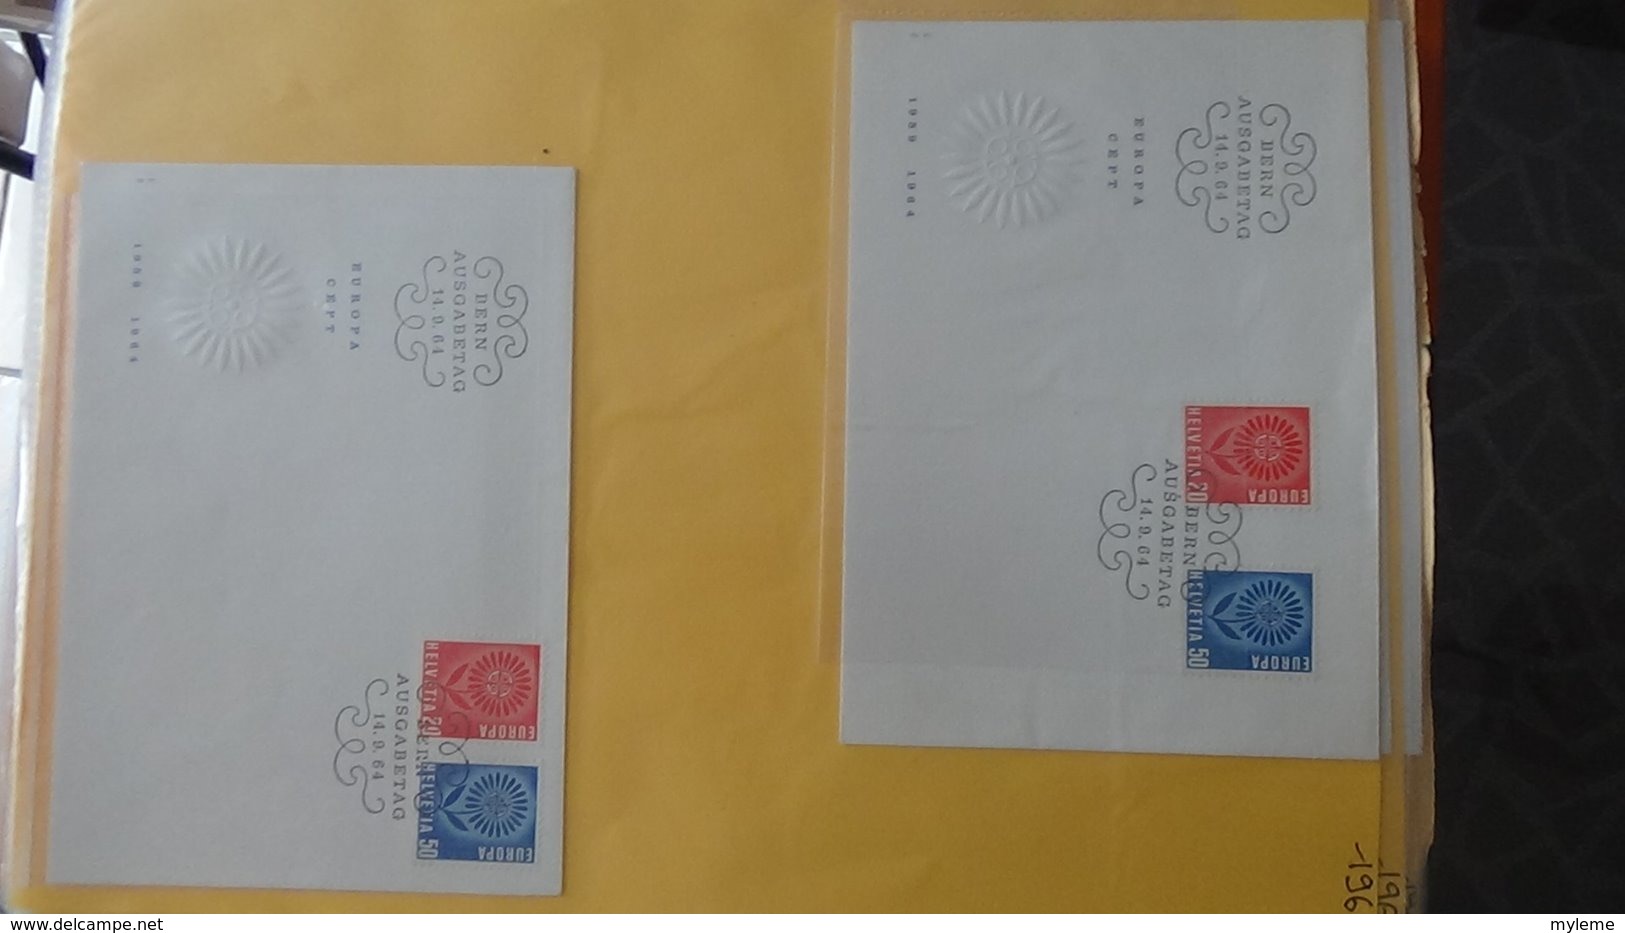 Dispersion d'une collection d'enveloppe 1er jour et autres dont 162 EUROPA Suisse